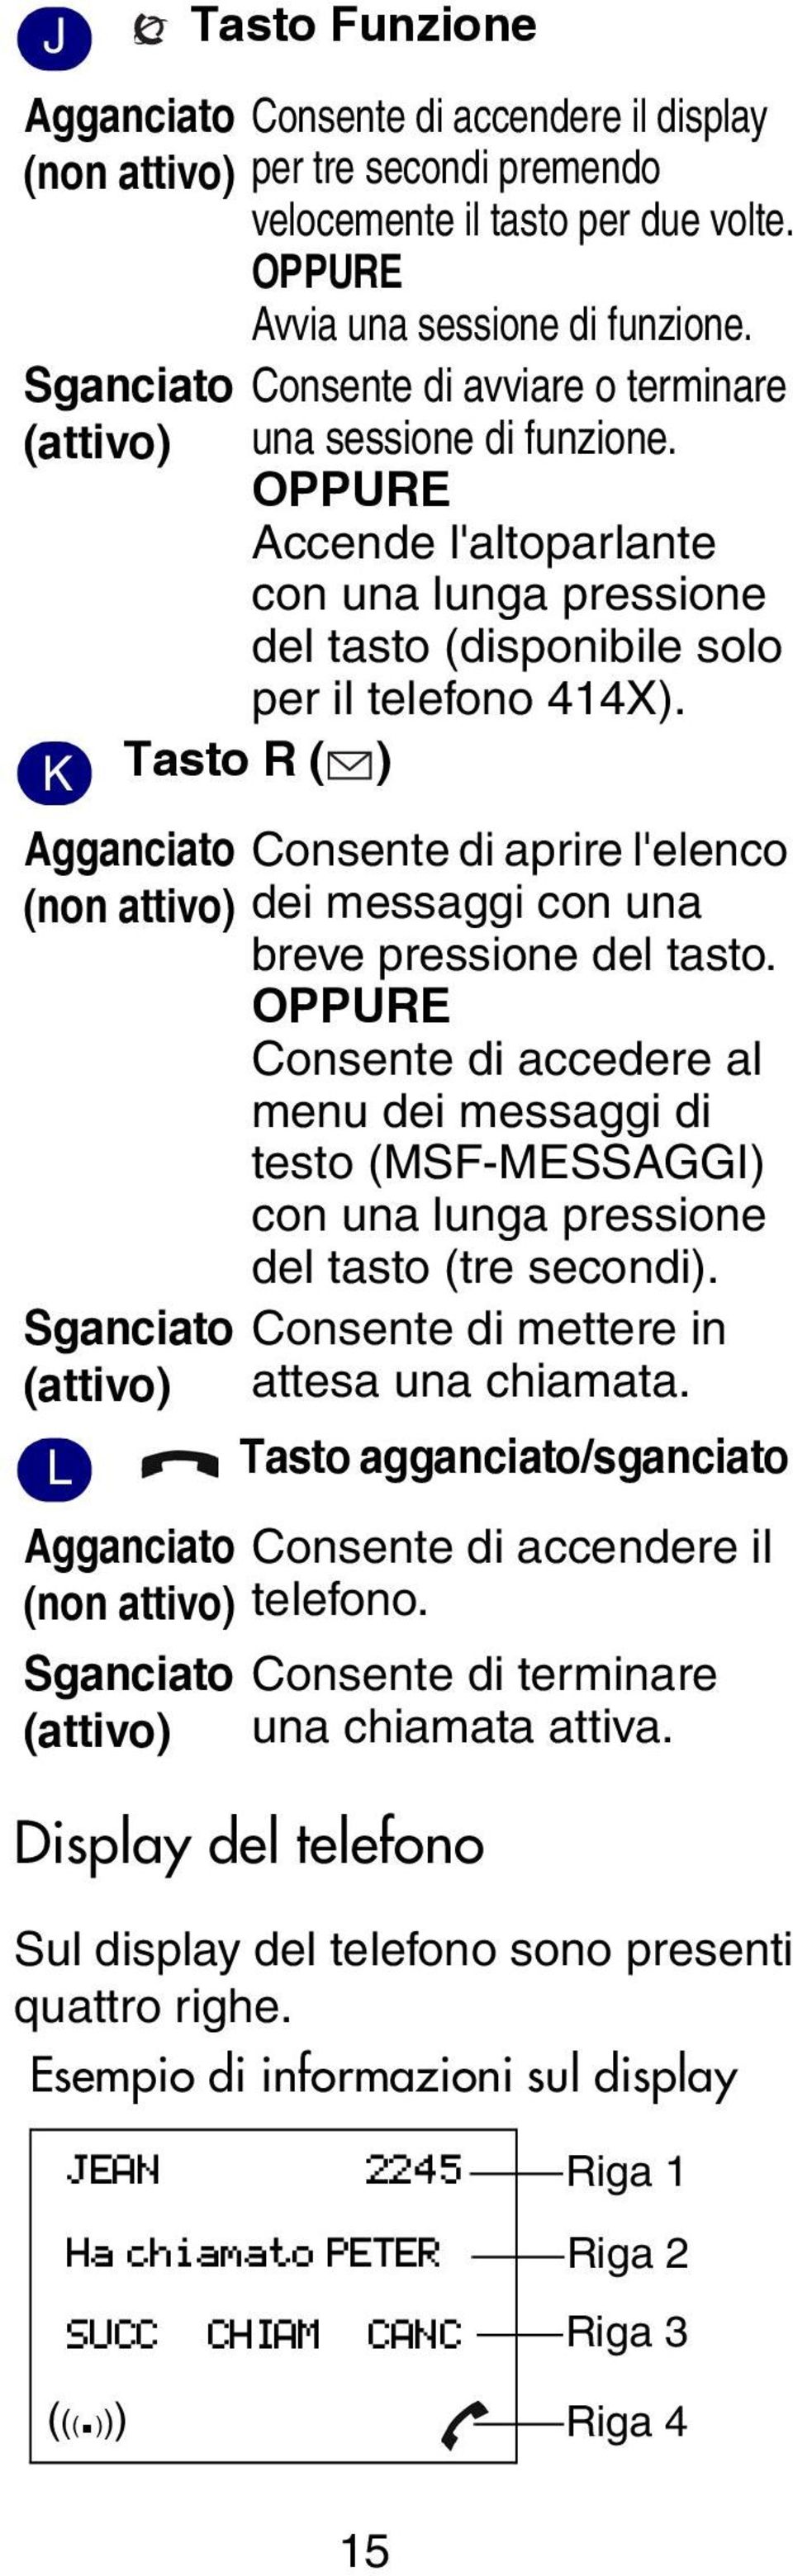 K Tasto R ( ) Agganciato Consente di aprire l'elenco (non attivo) dei messaggi con una breve pressione del tasto.